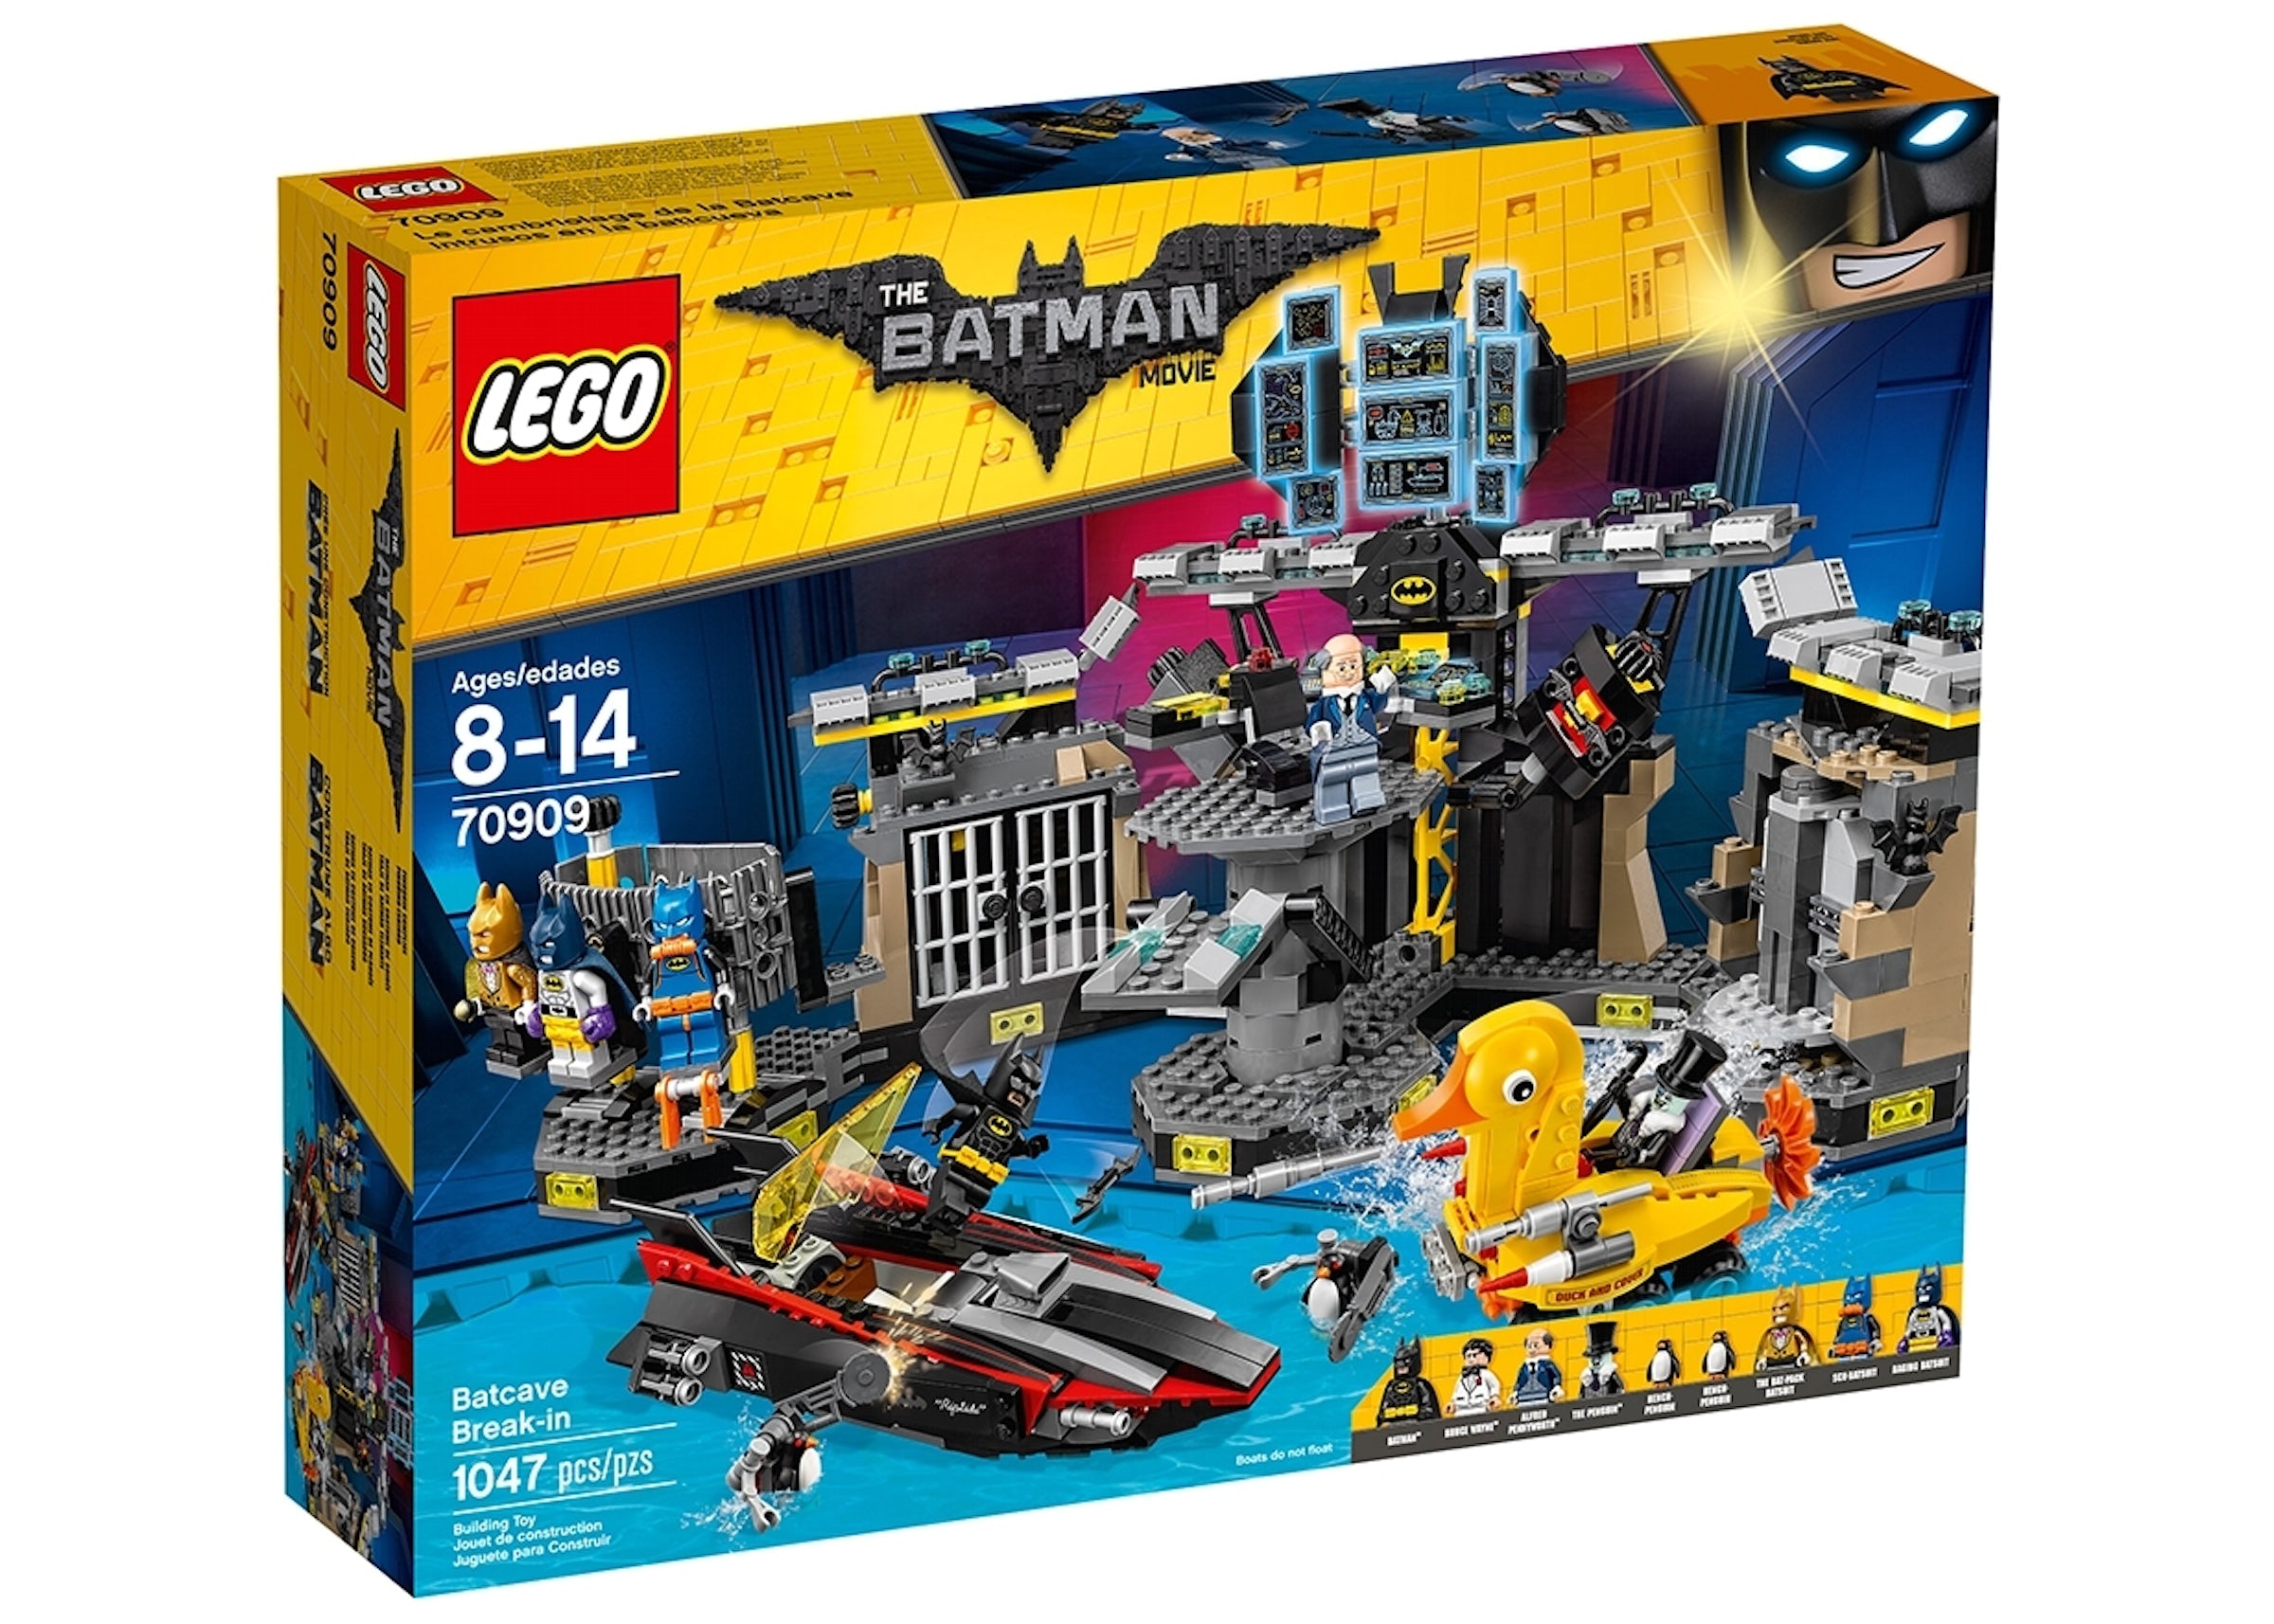 The Lego Batman Batcave Break